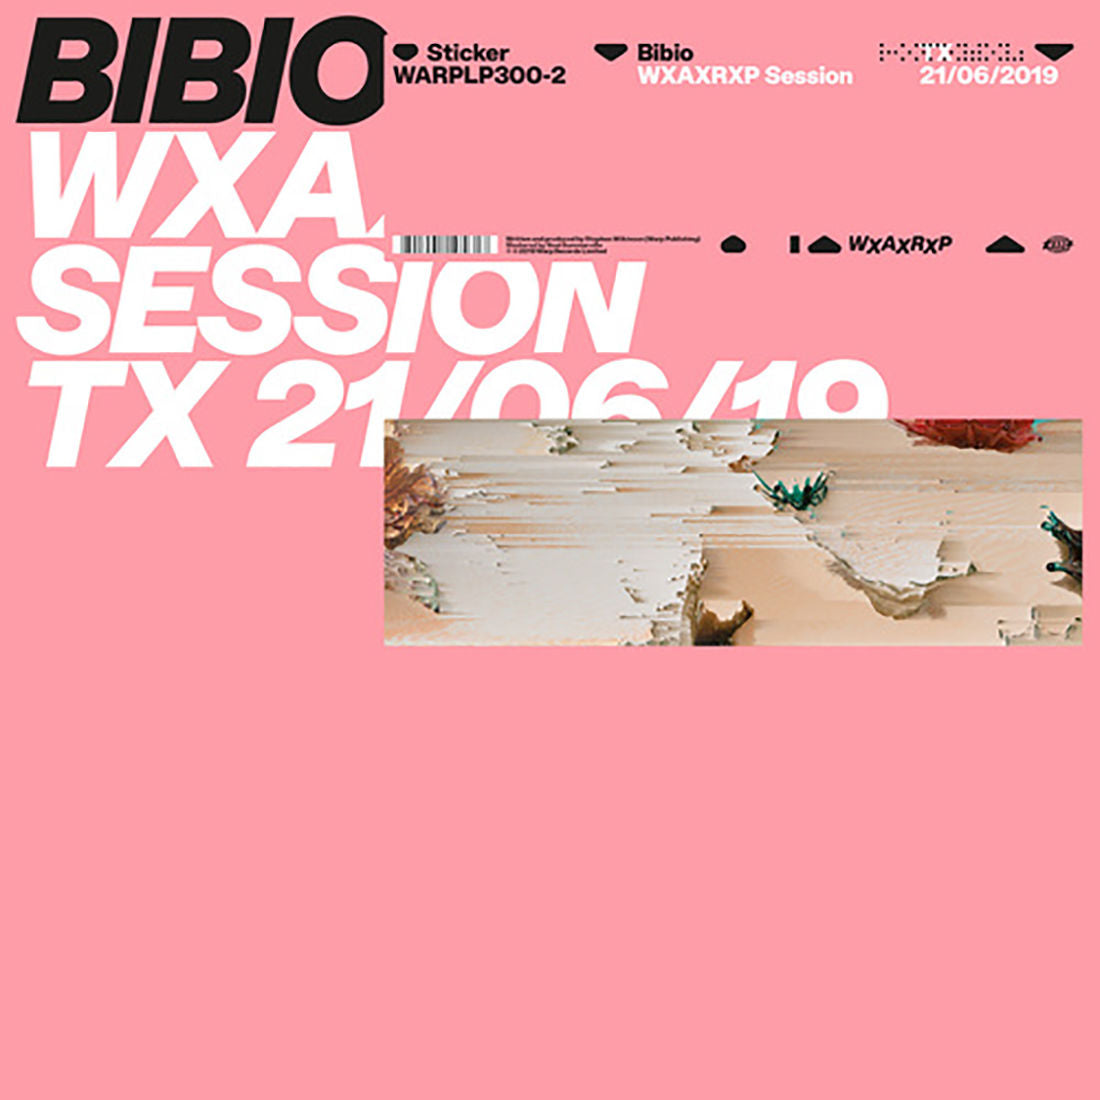 WXAXRXP Session: Vinyl LP